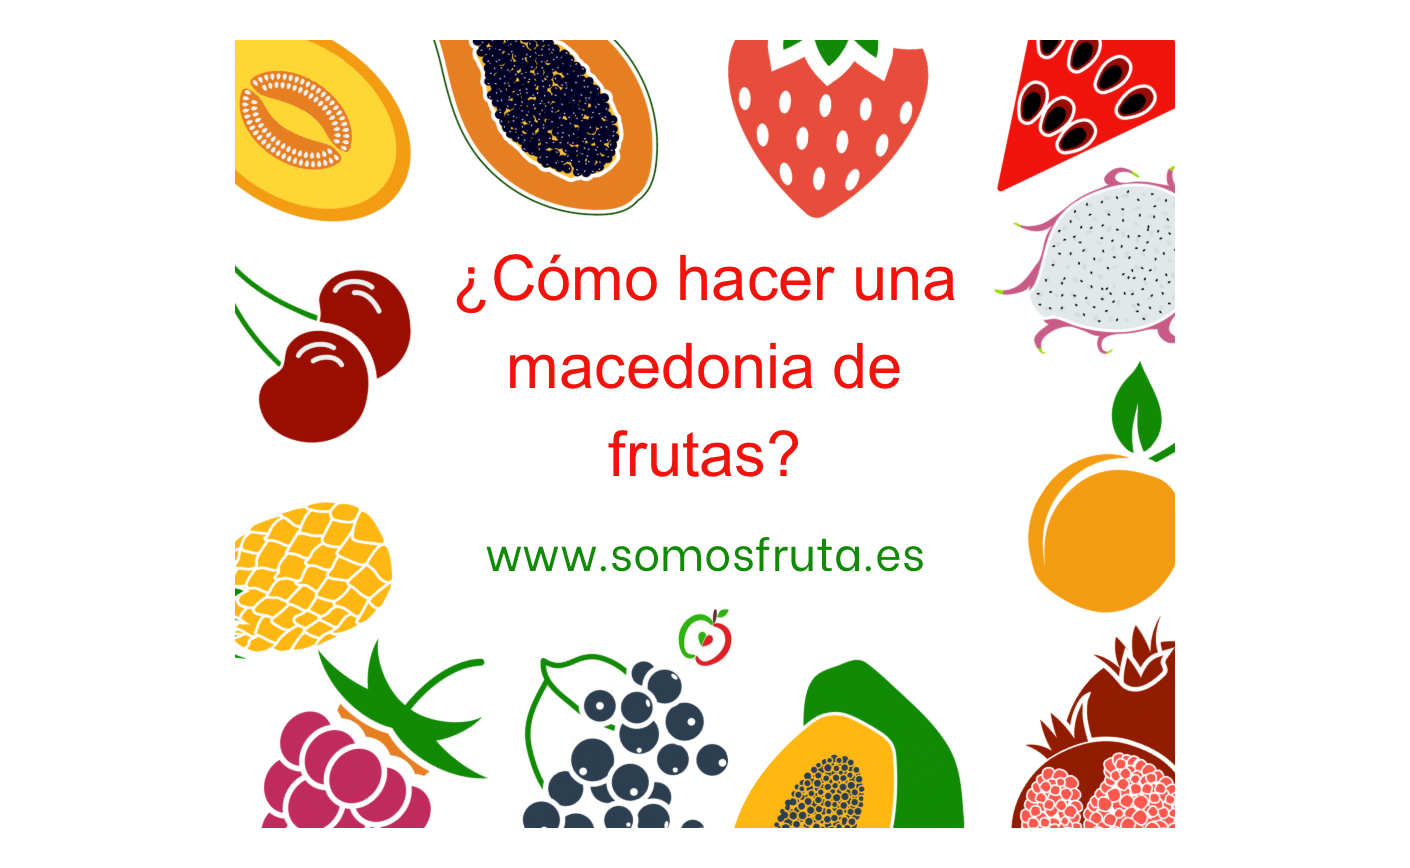 ¿Cómo hacer una macedonia de frutas frescas?